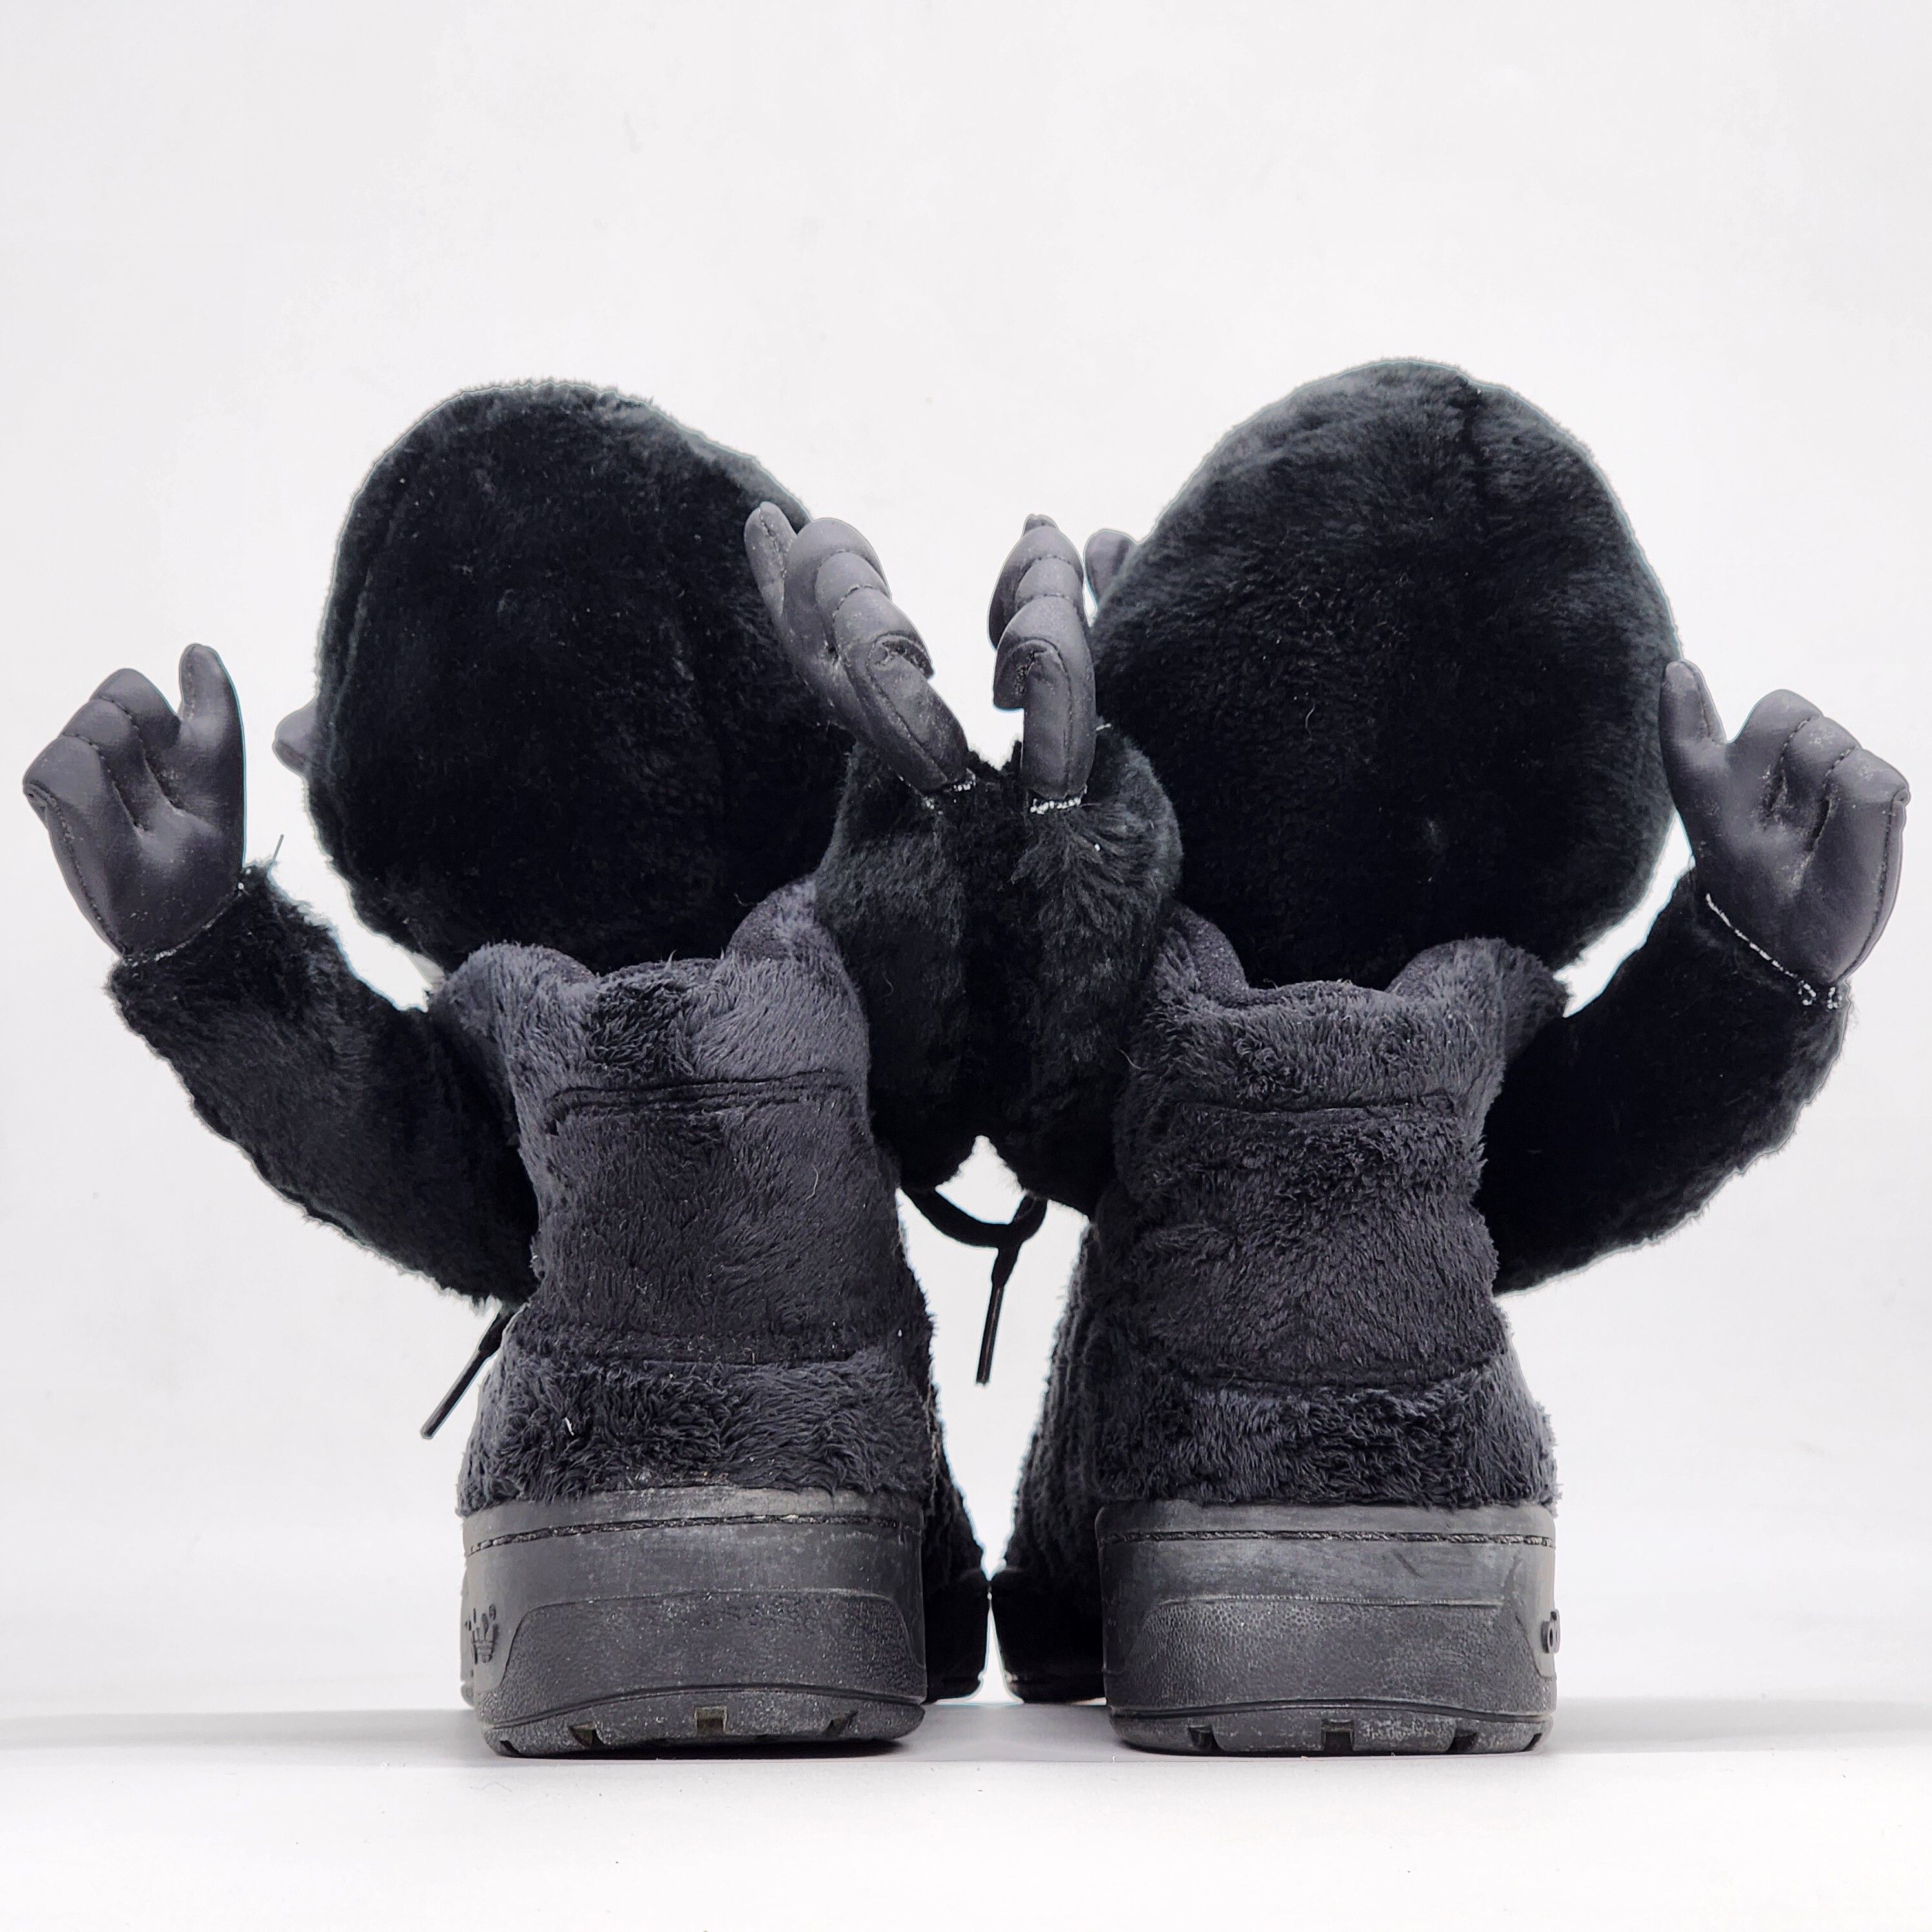 Adidas x Jeremy Scott - Gorilla Sneakers "2 Chainz" - 8